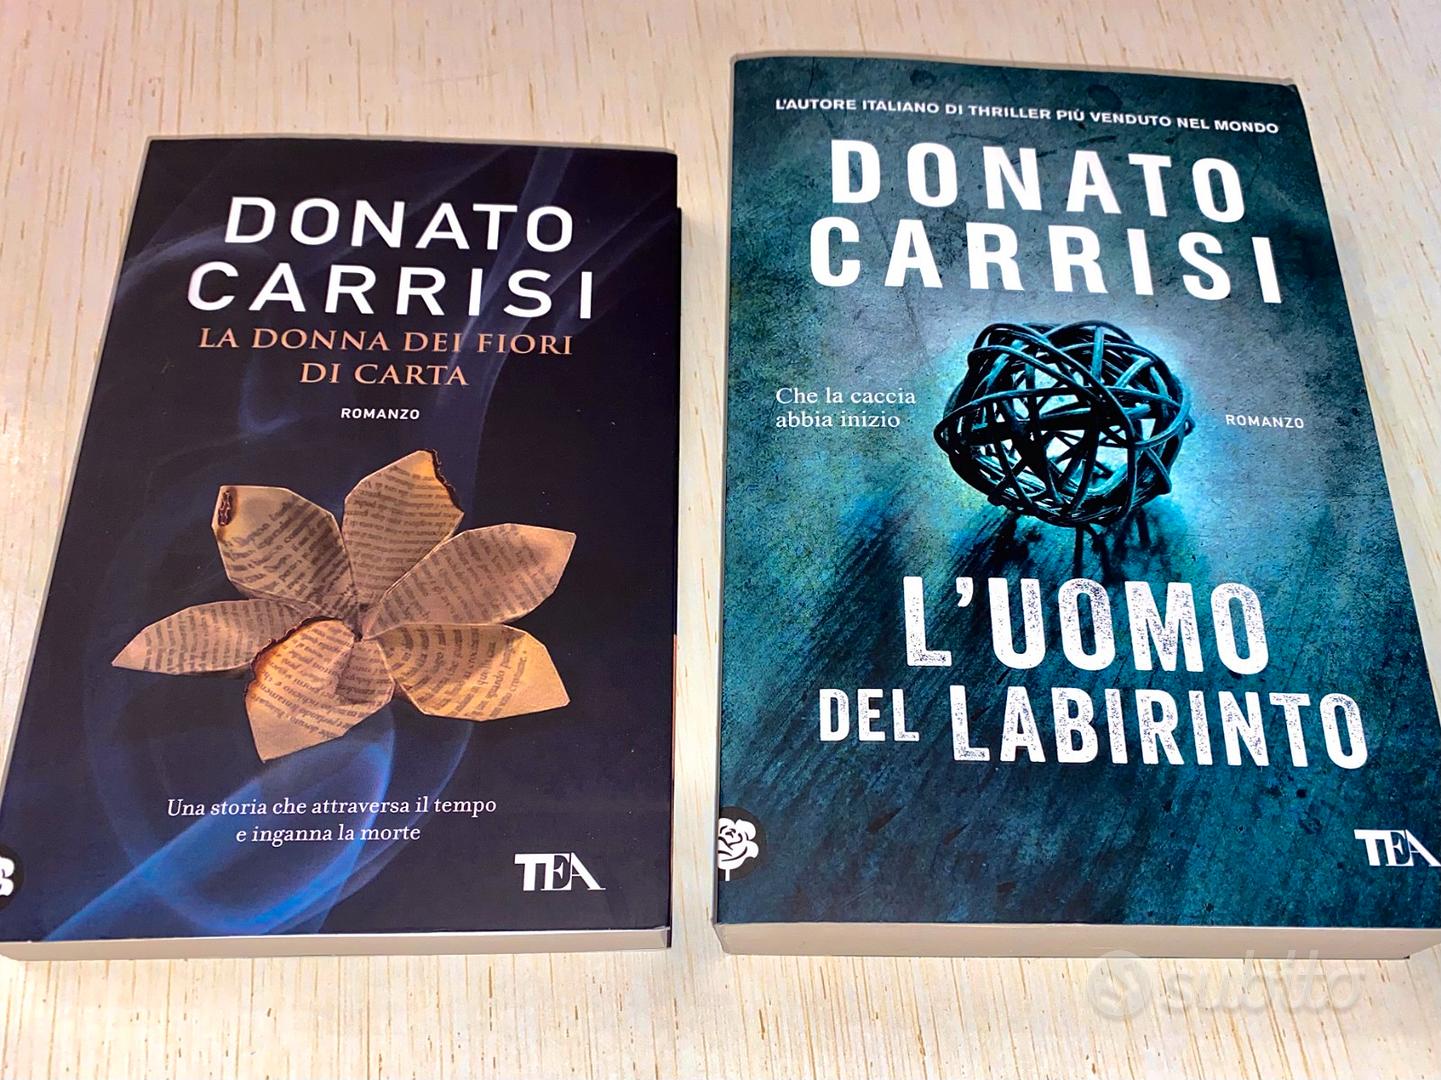 Donato carrisi - libri - Libri e Riviste In vendita a Salerno